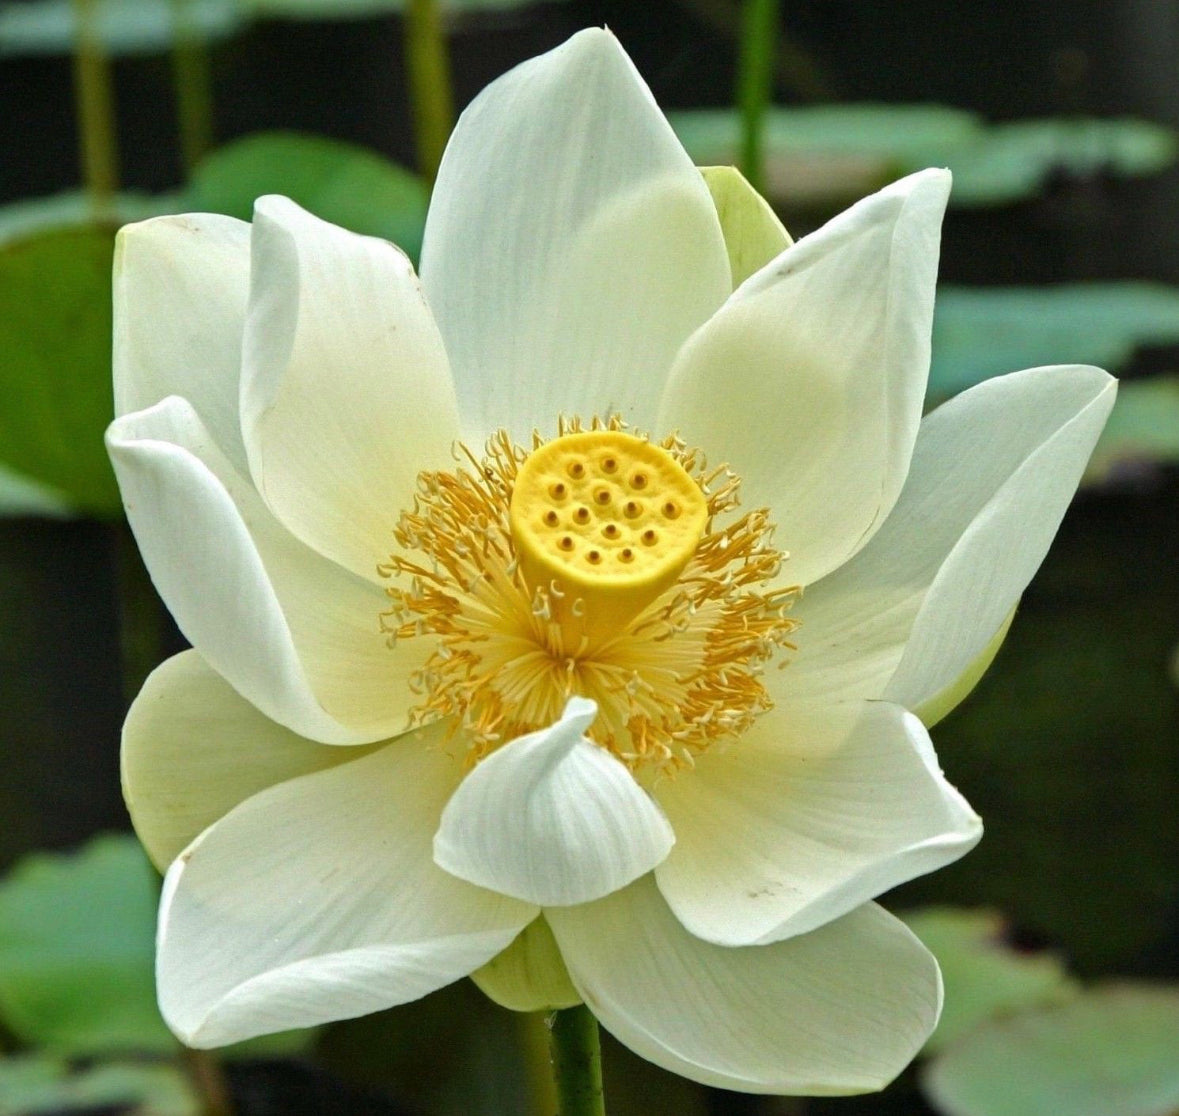 Lotus ‘Snow White’ seeds